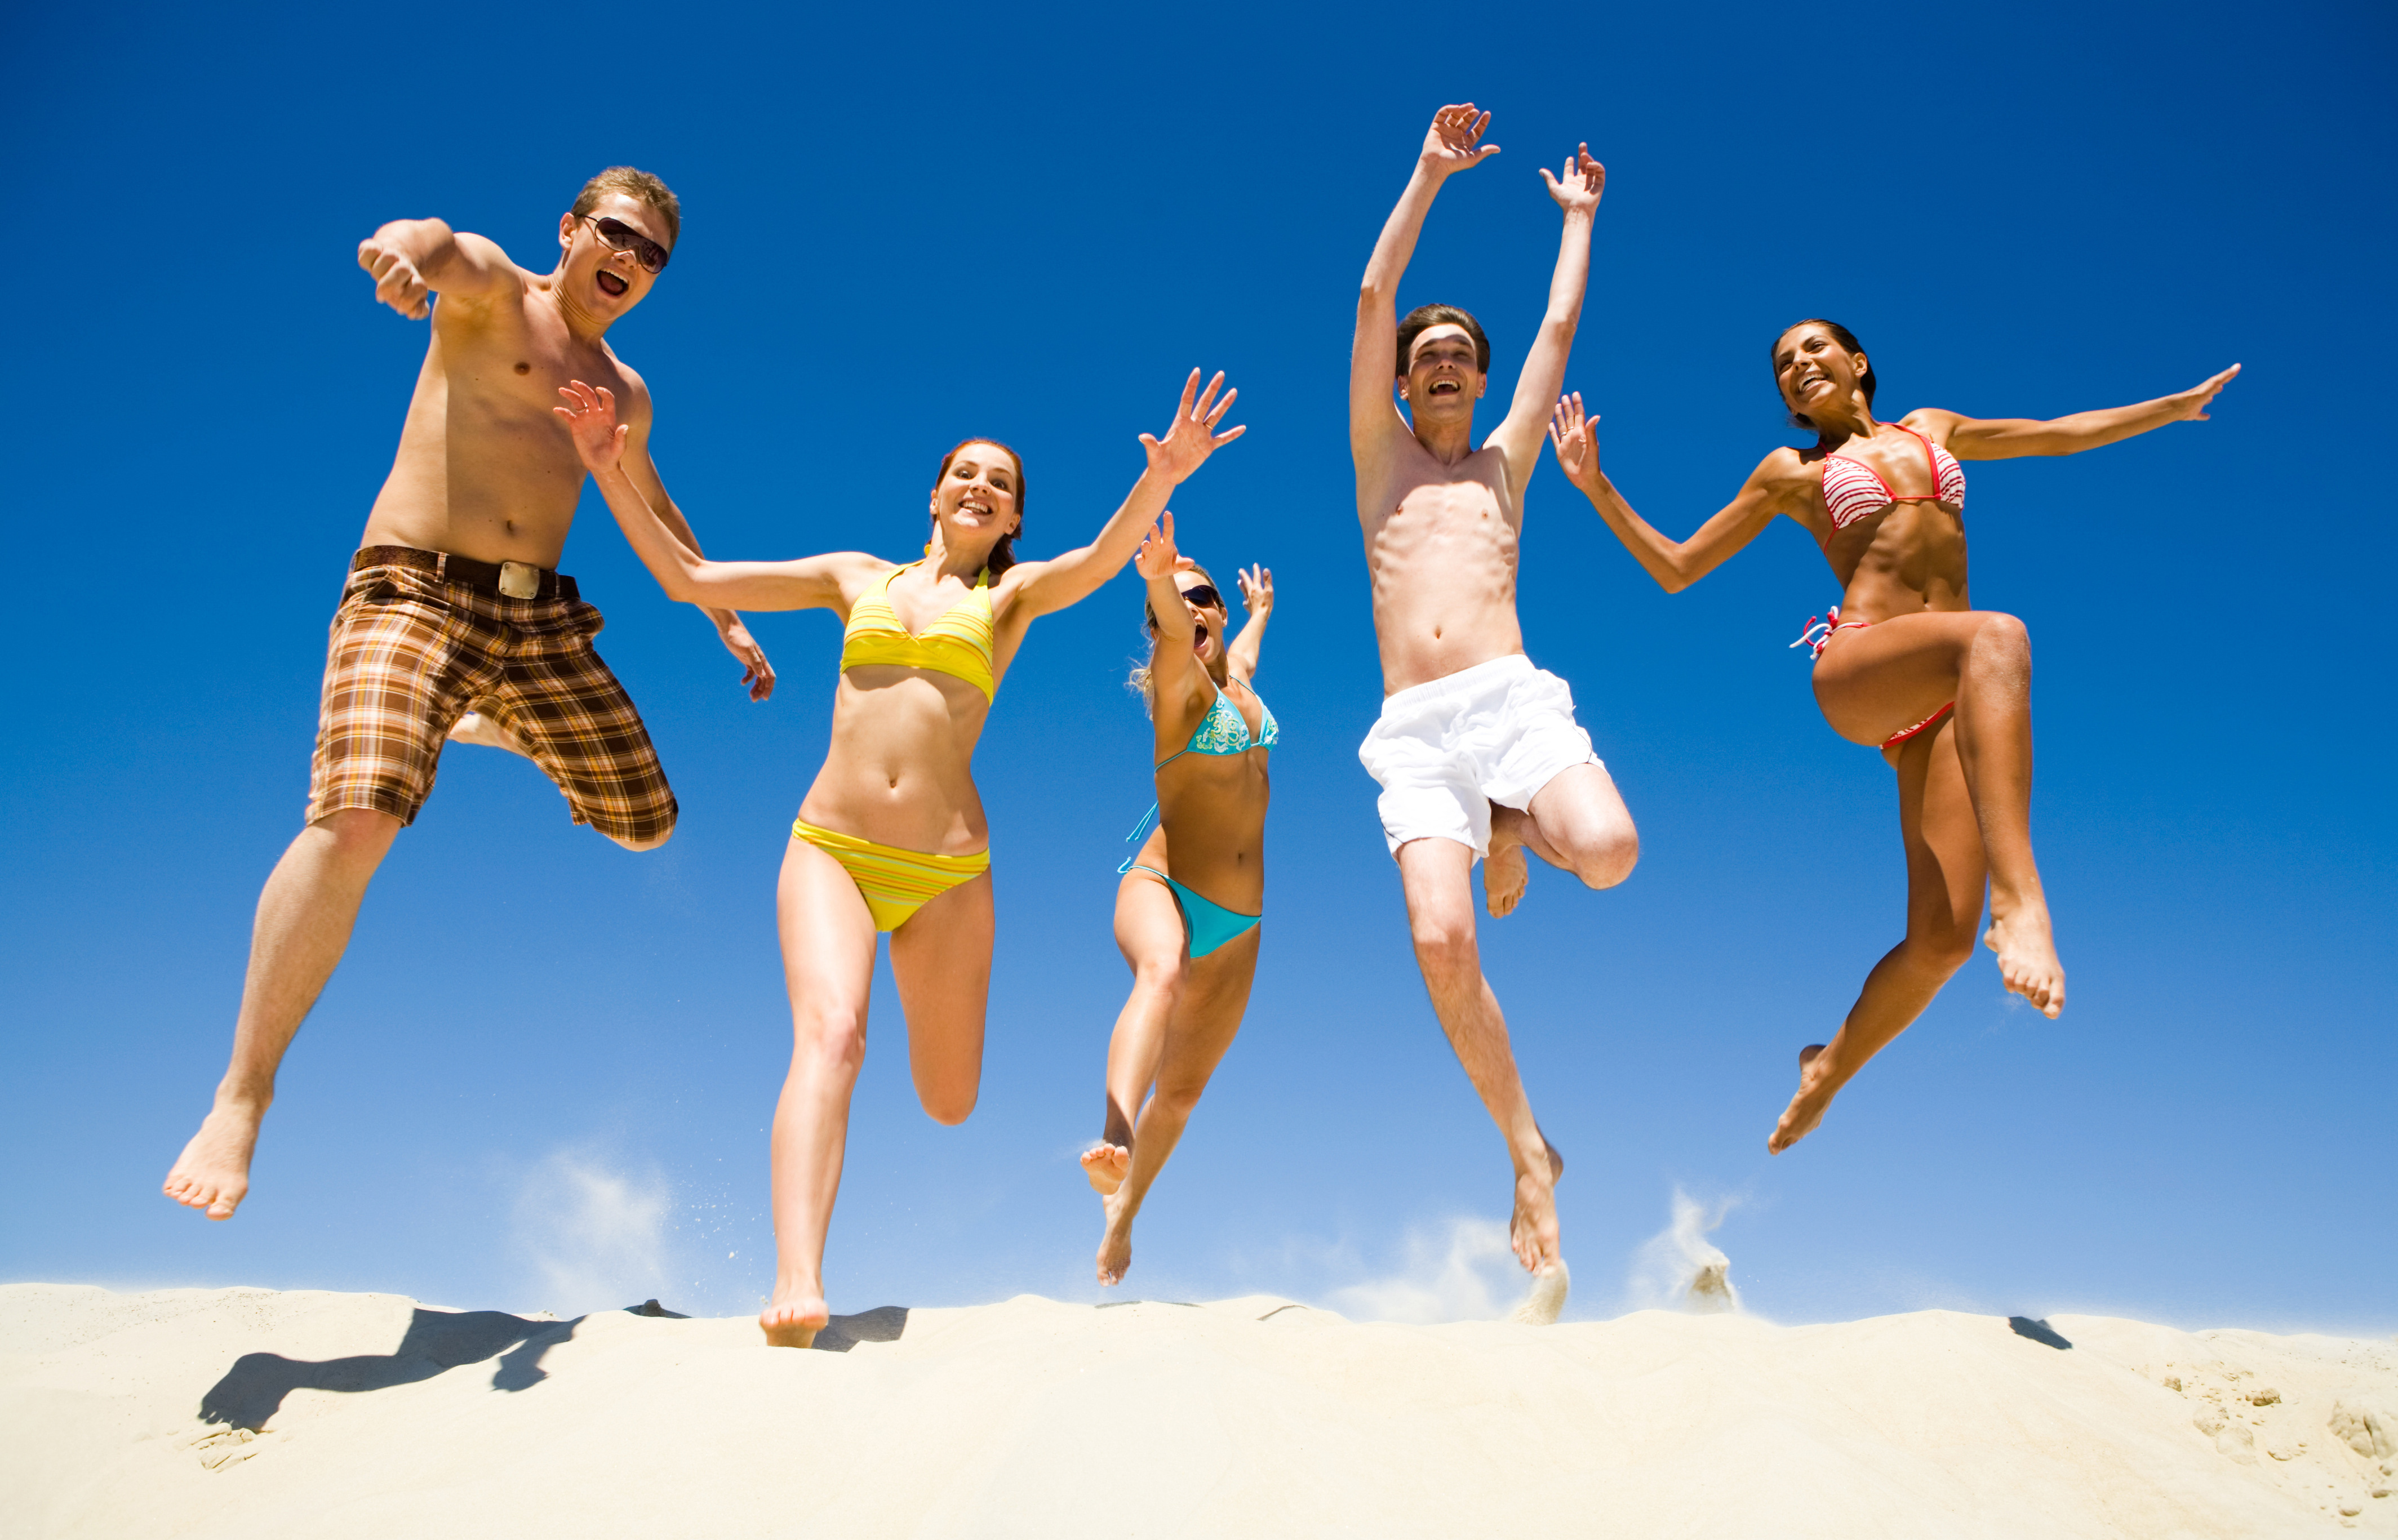 3d обои Мужчины в плавках и девушки в купальниках весело прыгают по песку пляжа  эмоциональные # 89895